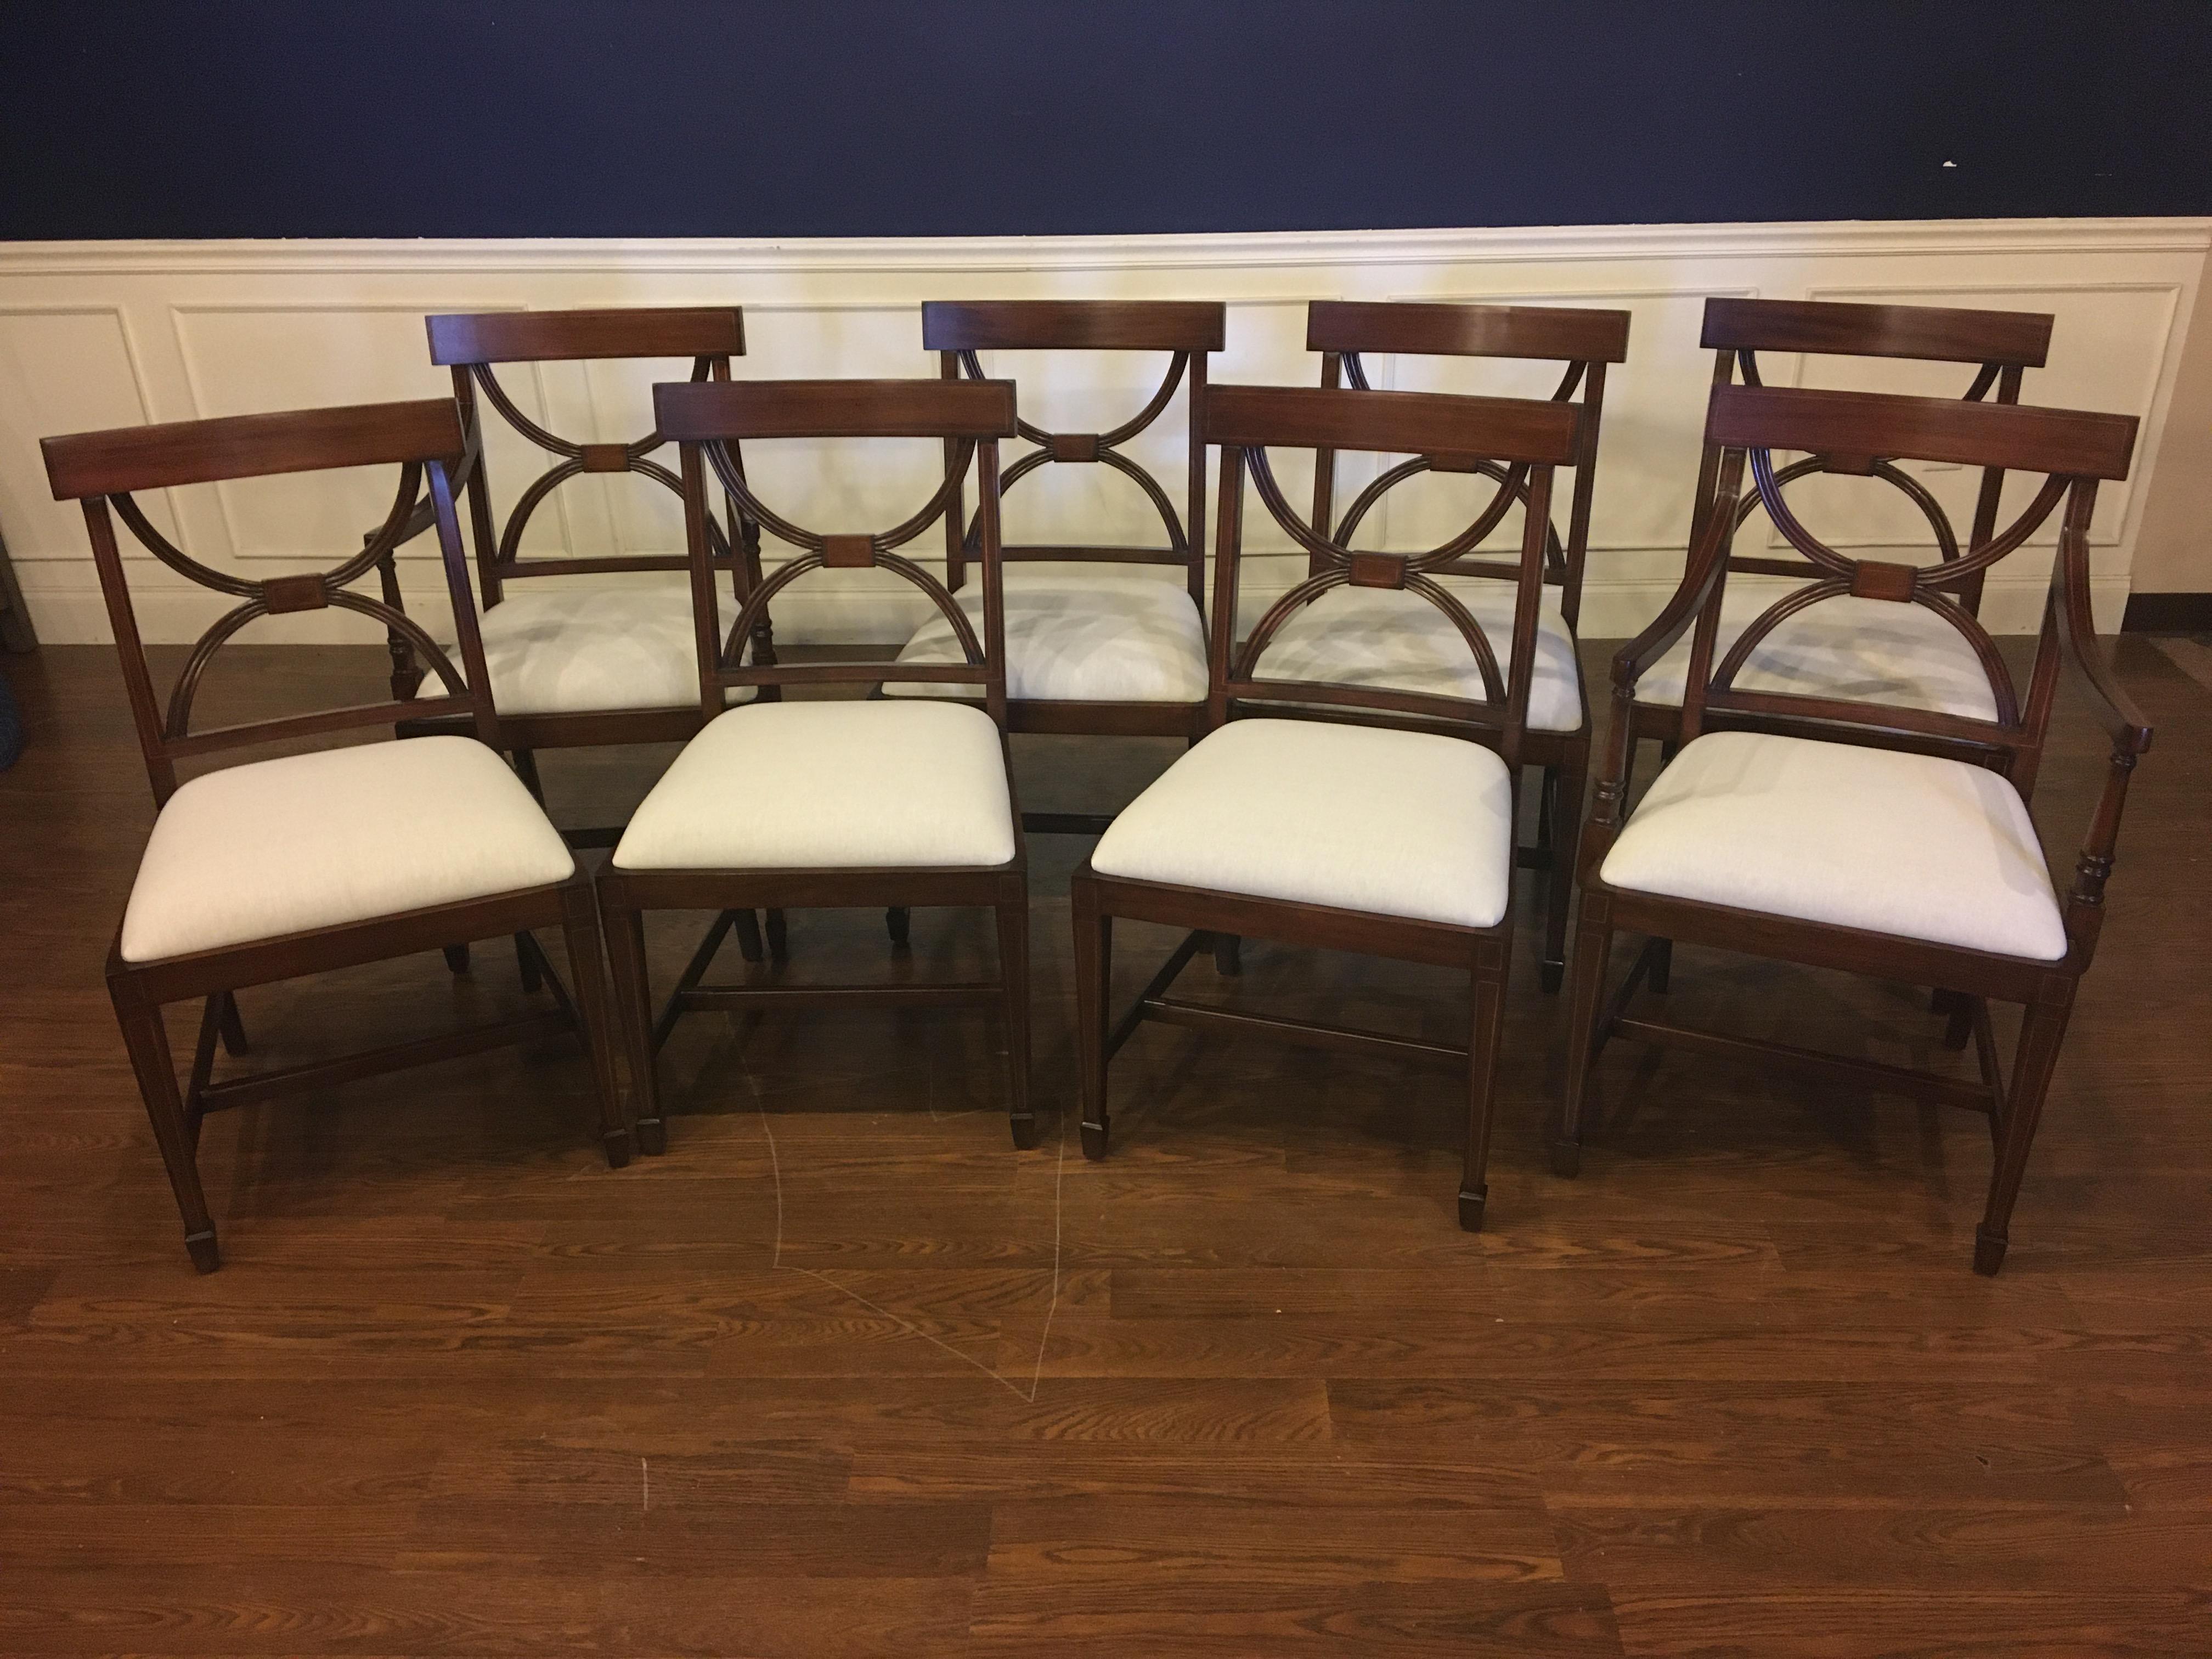 Il s'agit de nouvelles chaises de salle à manger traditionnelles en acajou. Leur design s'inspire des chaises de salle à manger de la période Regency. Ils présentent le style classique d'Adams. Ils présentent une élégance discrète avec des pieds